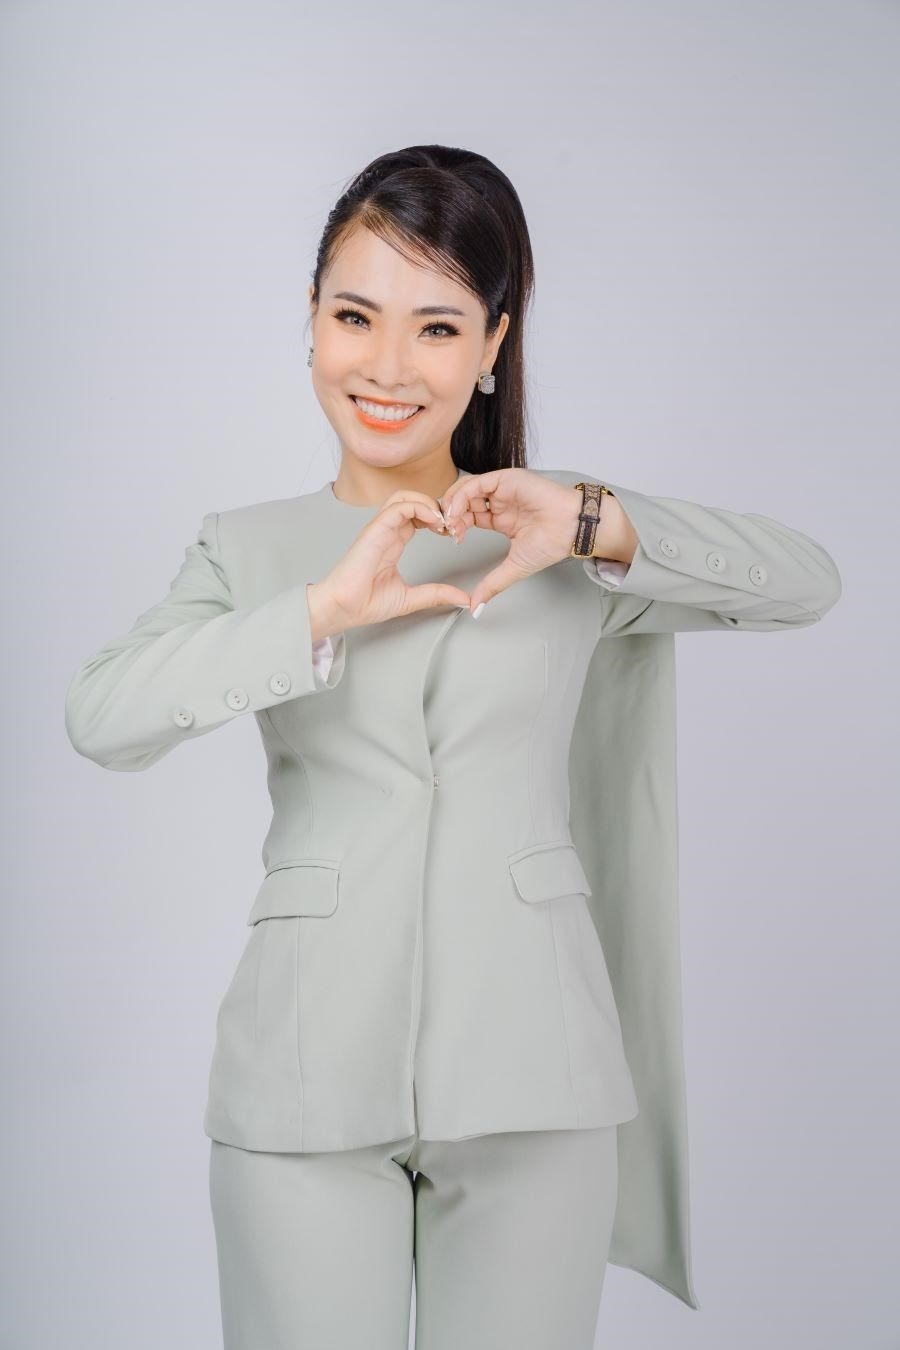  CEO Vân Anh Lê - 'Lấy sự hài lòng của khách hàng làm mục tiêu để phát triển' 